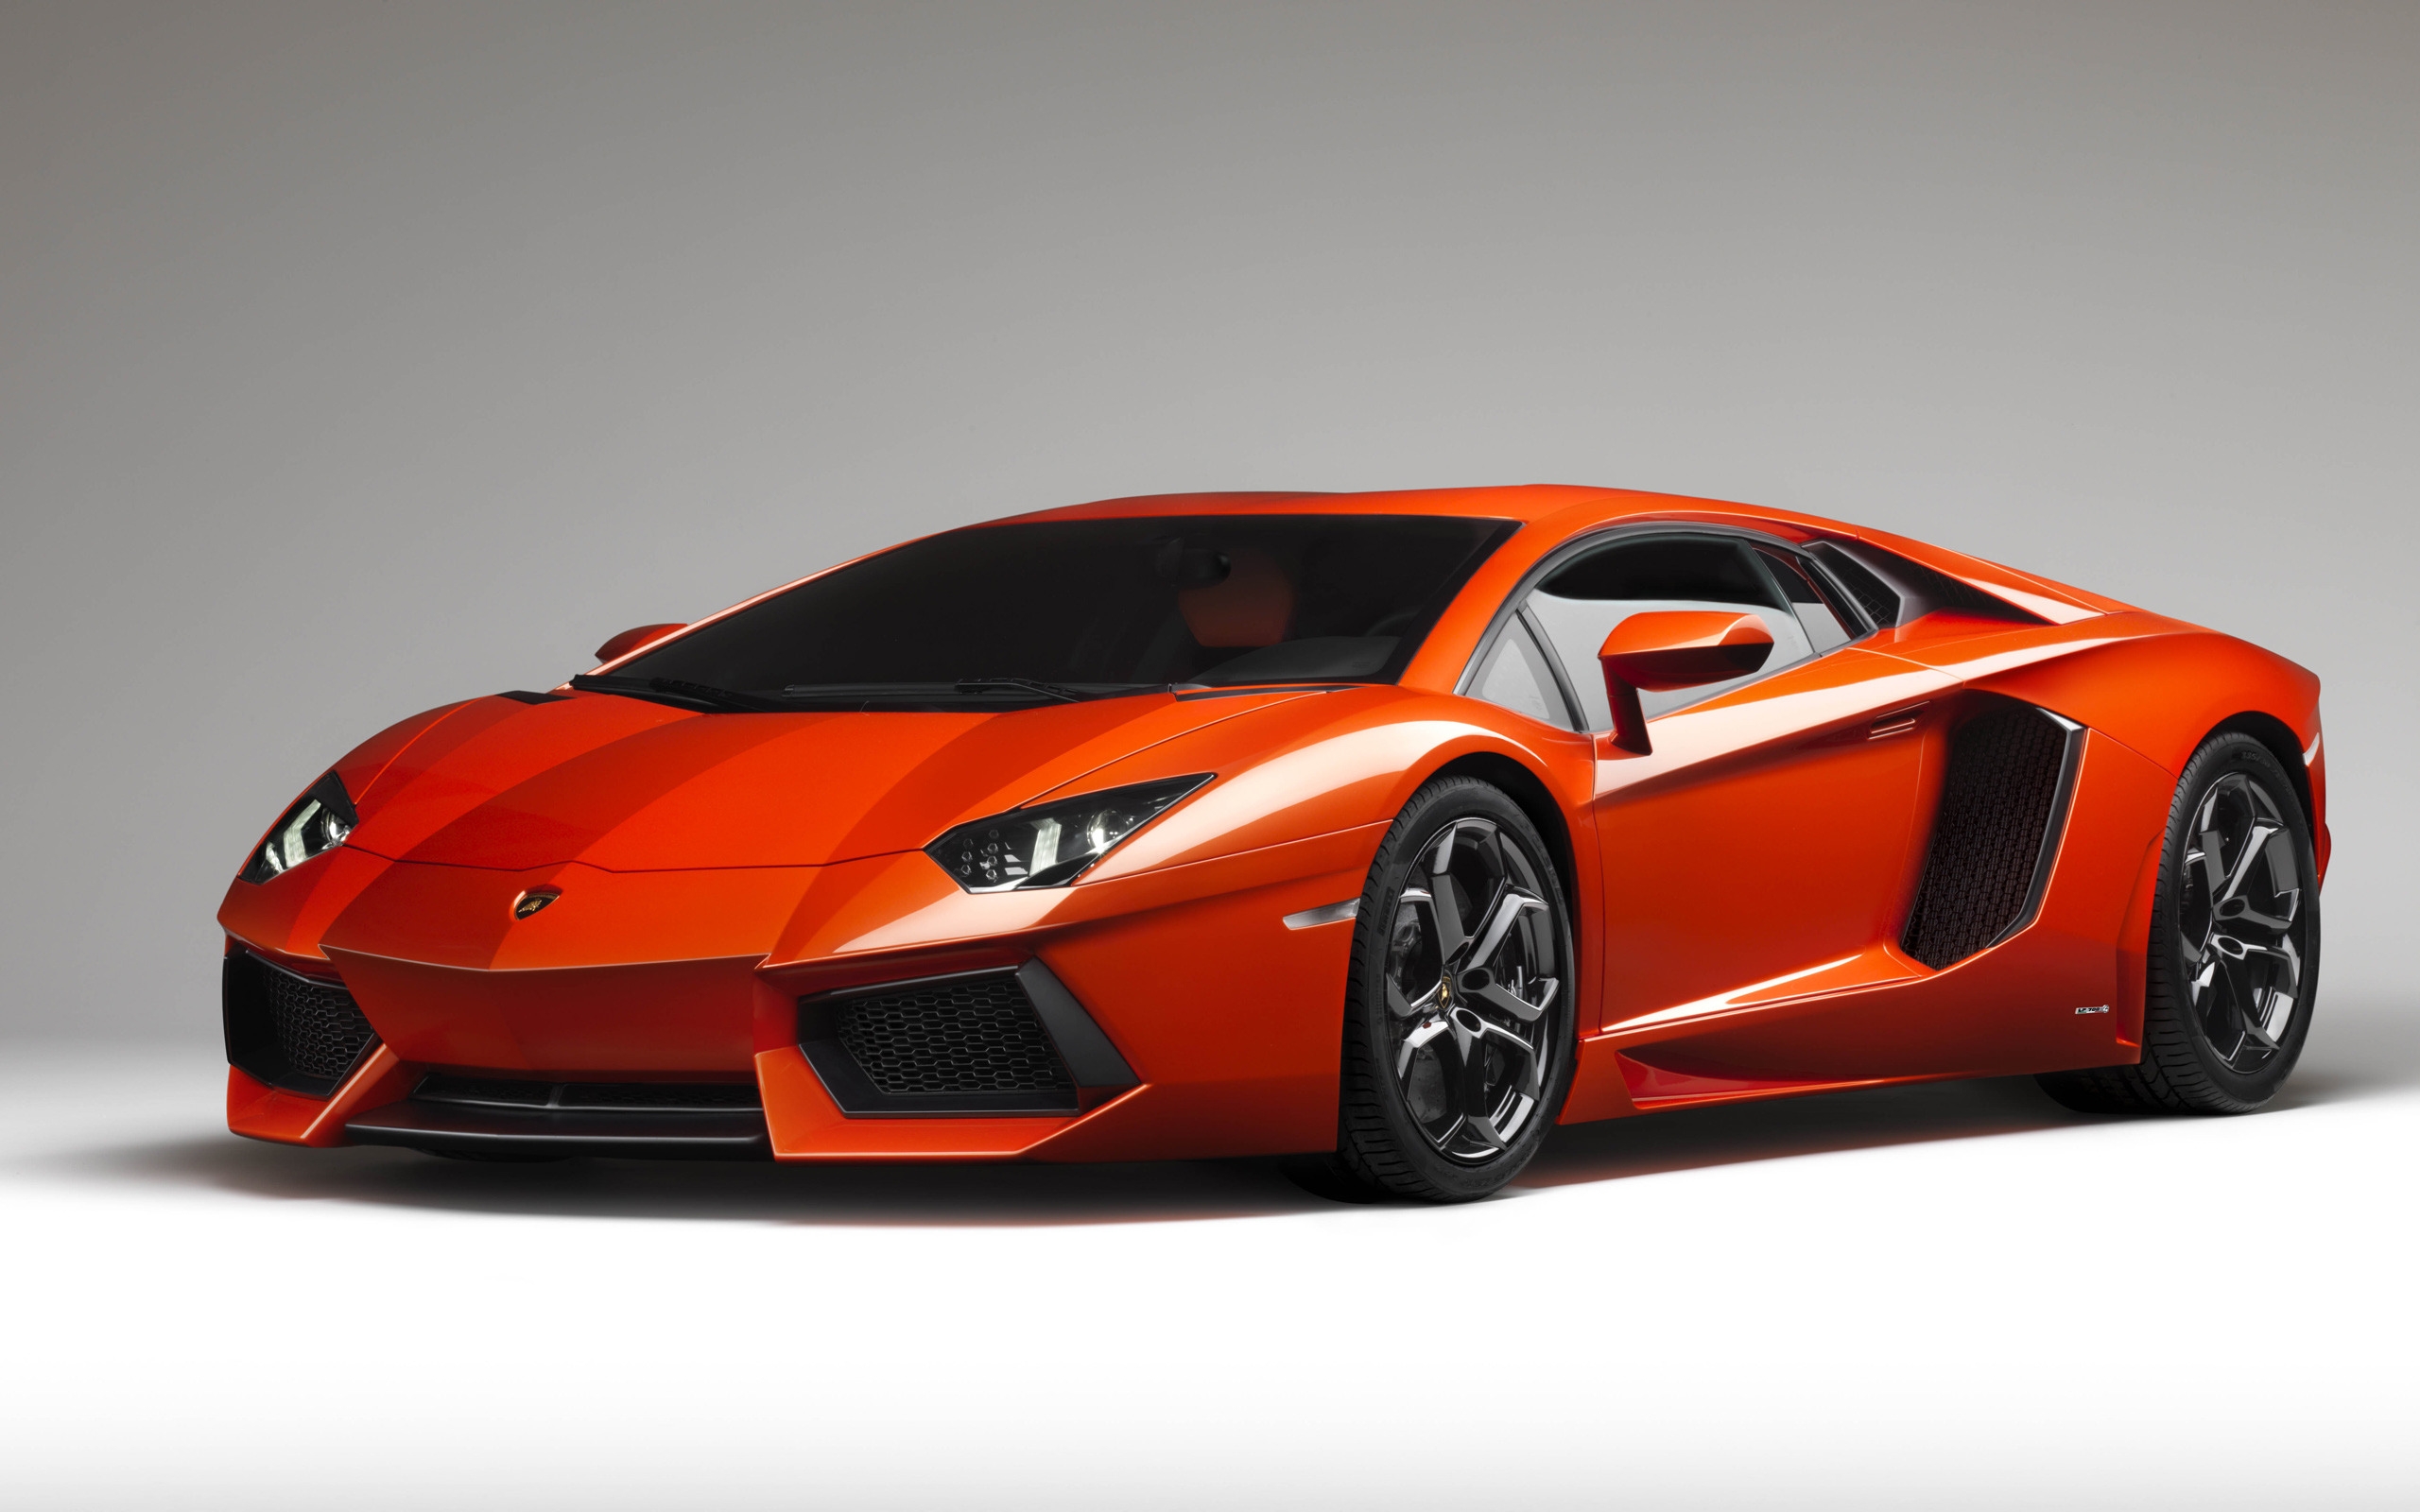 Lamborghini Aventador for 2560 x 1600 widescreen resolution